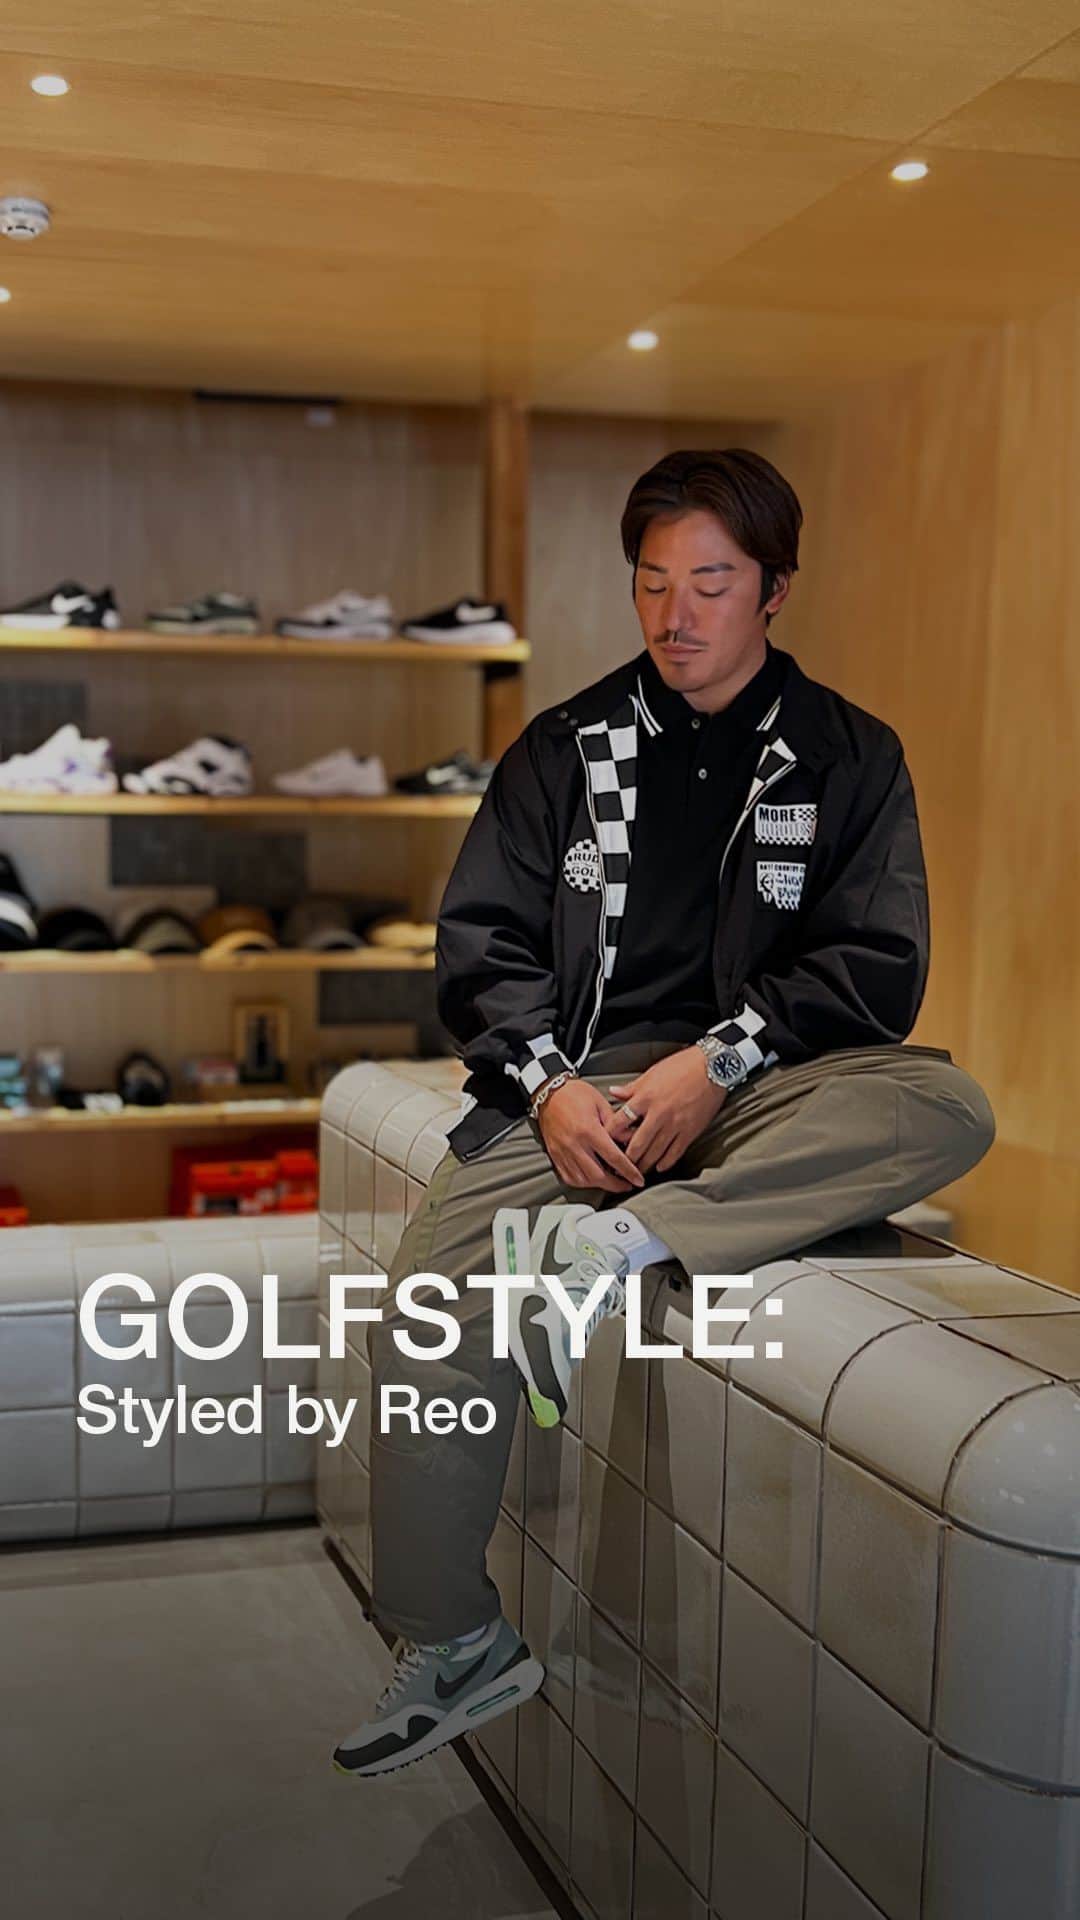 金尾玲生のインスタグラム：「ゴルフ場でのスタイリングを紹介するシリーズ “GOLFSTYLE” の Ep.9 は @reokanao をフィーチャーした “Styled by Reo” 。  街でも着られるようなストリートスタイルとゴルファーらしく締まった2スタイルを提案した Reo。ストリートスタイルの LOOK 1では、内側のチェッカー柄が印象的で胸のワッペンが良いアクセントのドリズラージャケットを選んだ。パンツはテイラーメイドとユナイテッドアローズのコラボパンツで、ゆるめのシルエットがストリート感をより演出。LOOK 1のパンツとシューズをキープして、トップスを変えた LOOK 2。 Reo 自身のブランド @solidex_by_solid のモックネックに、機能性の高い Hypegolf のフーディとベストを合わせた。全体的にまとまったスタイルに。  LOOK 1 🔽 POLO (XL): @bedwin_official x @anticountryclubtokyo / 27,500円 JACKET (XXL): @bedwin_official x @anticountryclubtokyo / 60,500円 PANTS (L): @taylormade_golf_japan_apparel_ x @unitedarrows_golf / 30,800円 SOCKS: @stance_japan / 1,980円 SHOES: @nike / 21,450円  LOOK 2 🔽 MOCK (L): @solidex_by_solid / 22,000円 HOODIE (L): @hypegolfjapan / 30,800円 VEST (L): @hypegolfjapan / 35,200円 CAP: @solidex_by_solid / 9,350円  Model: Reo Kanao （モデル身長: 171cm）  これらのアイテムは Hypegolf 代官山ストアおよびオンライン EC サイトにて販売中。詳しくはプロフィールの🔗からご確認を  Video: Yuri Furuuchi / Hypegolf」